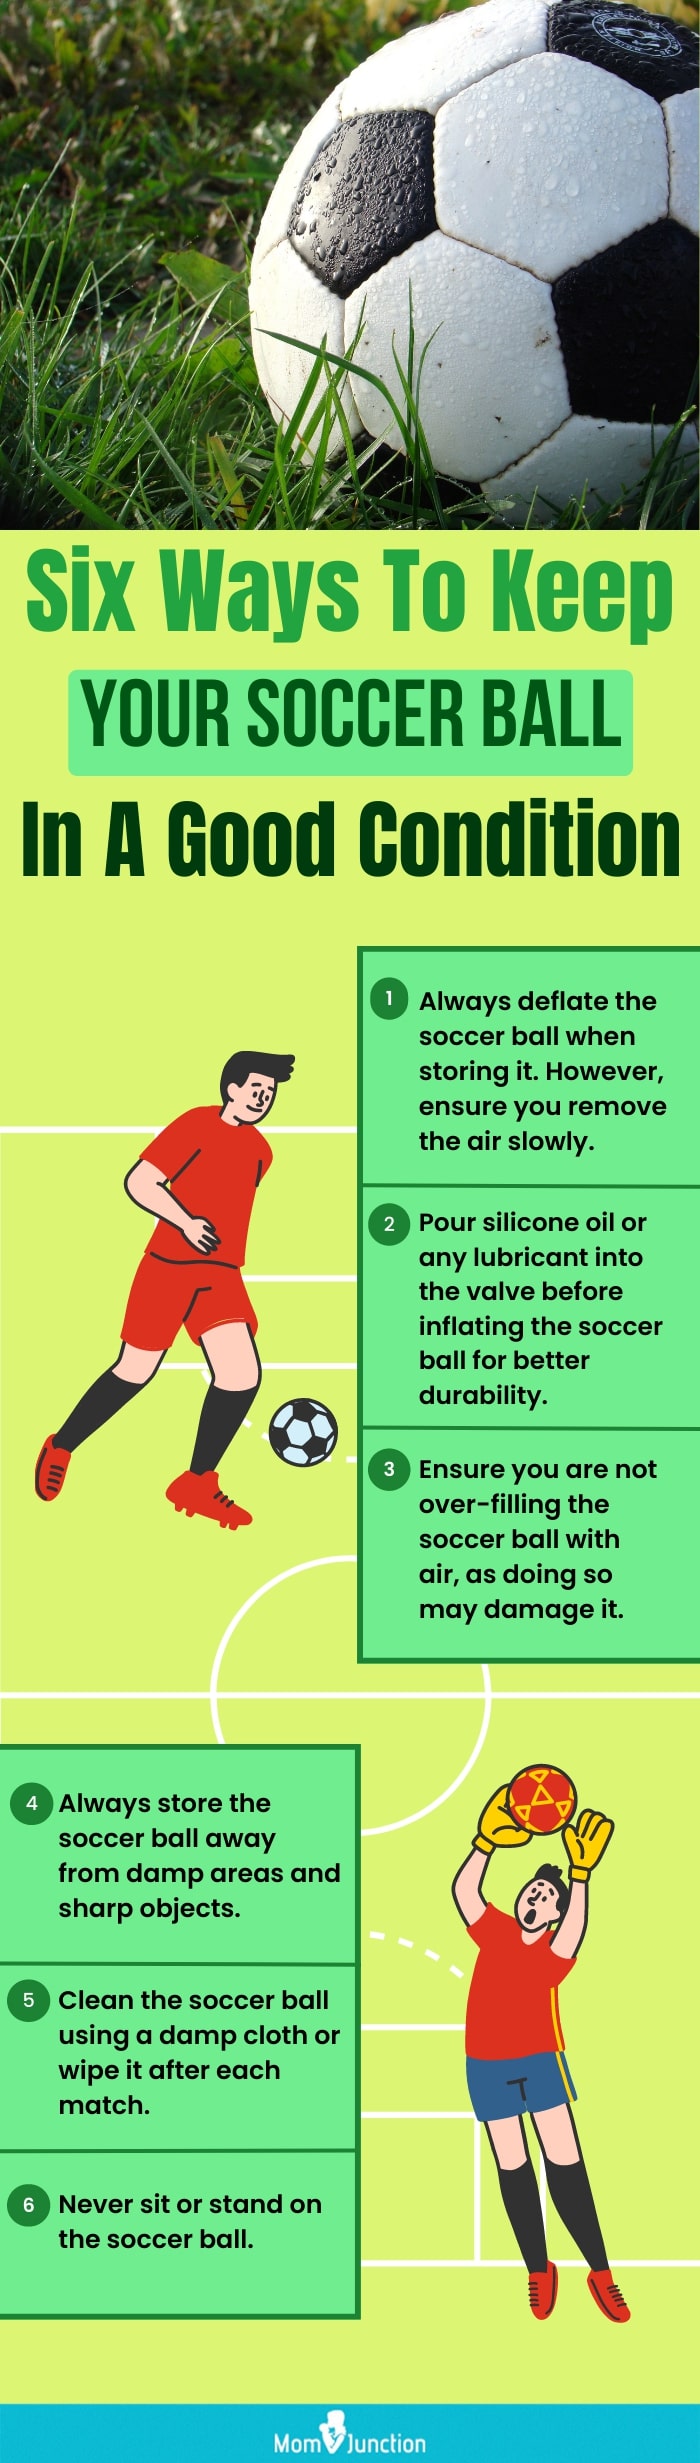 六种让你的足球保持良好状态的方法(信息图)